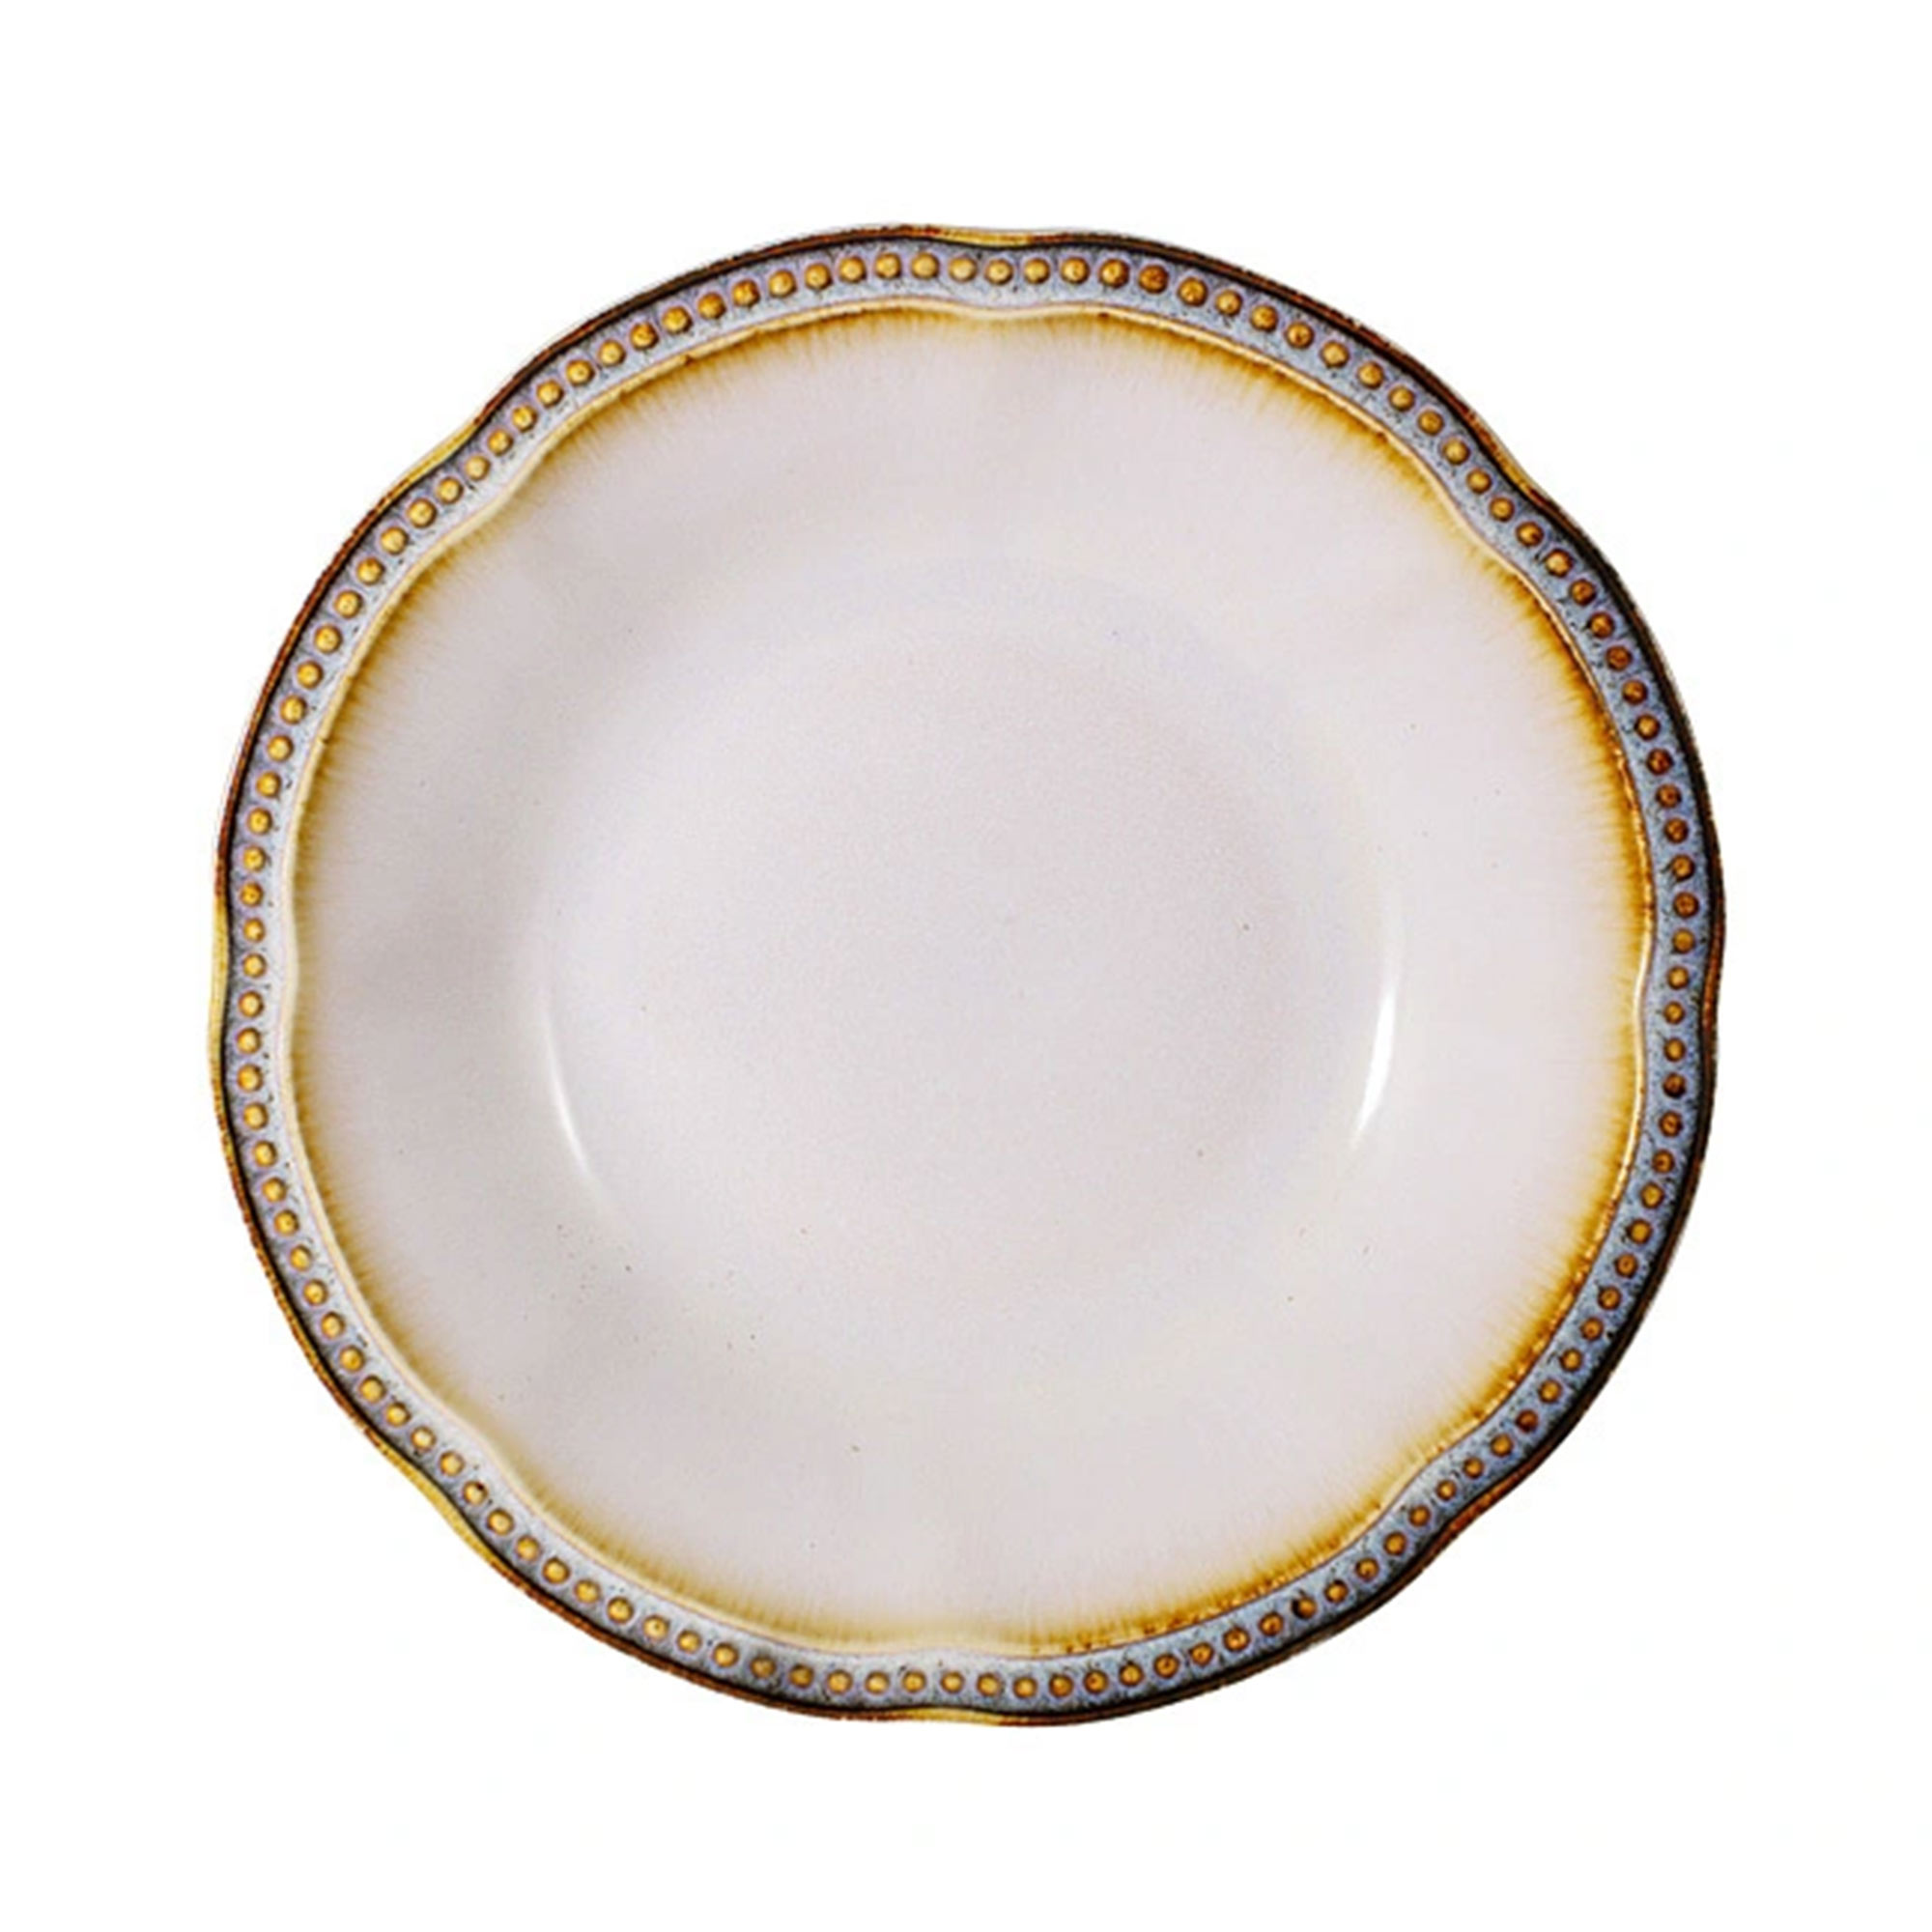 Тарелка суповая Matceramica Pompeia 23 см тарелка закусочная марс 23 см mc g750000377c0363 matceramica